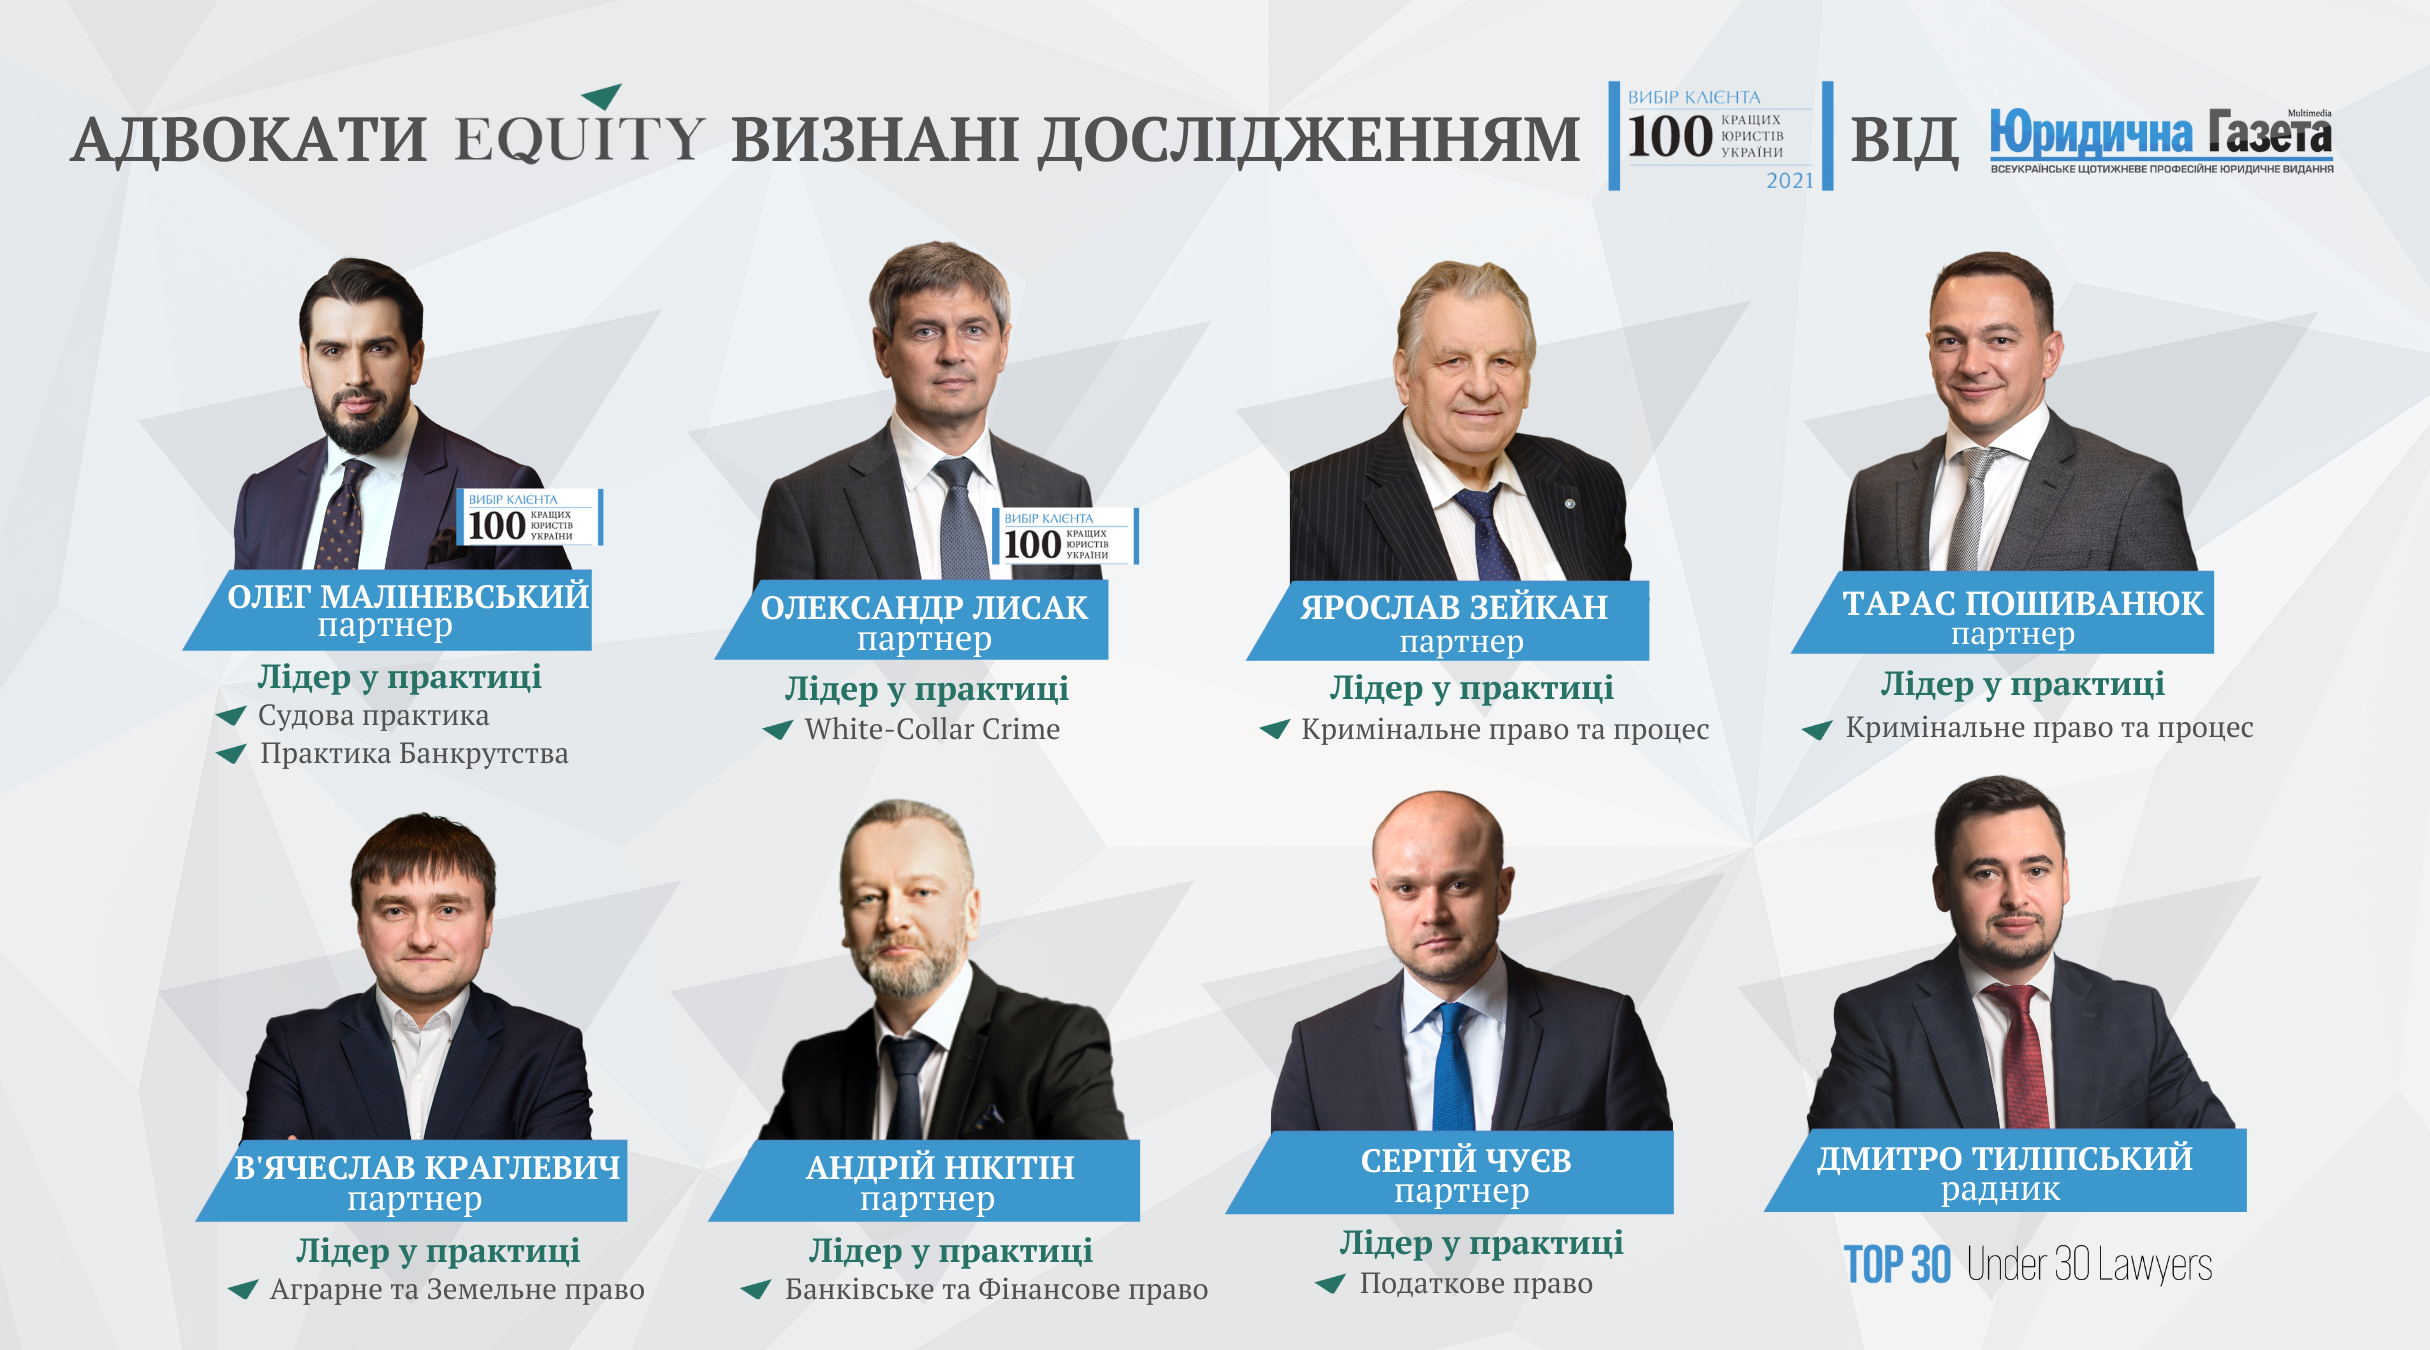 Адвокати EQUITY визнані дослідженням «Лідери ринку. ТОП-100 кращих юристів України 2021»